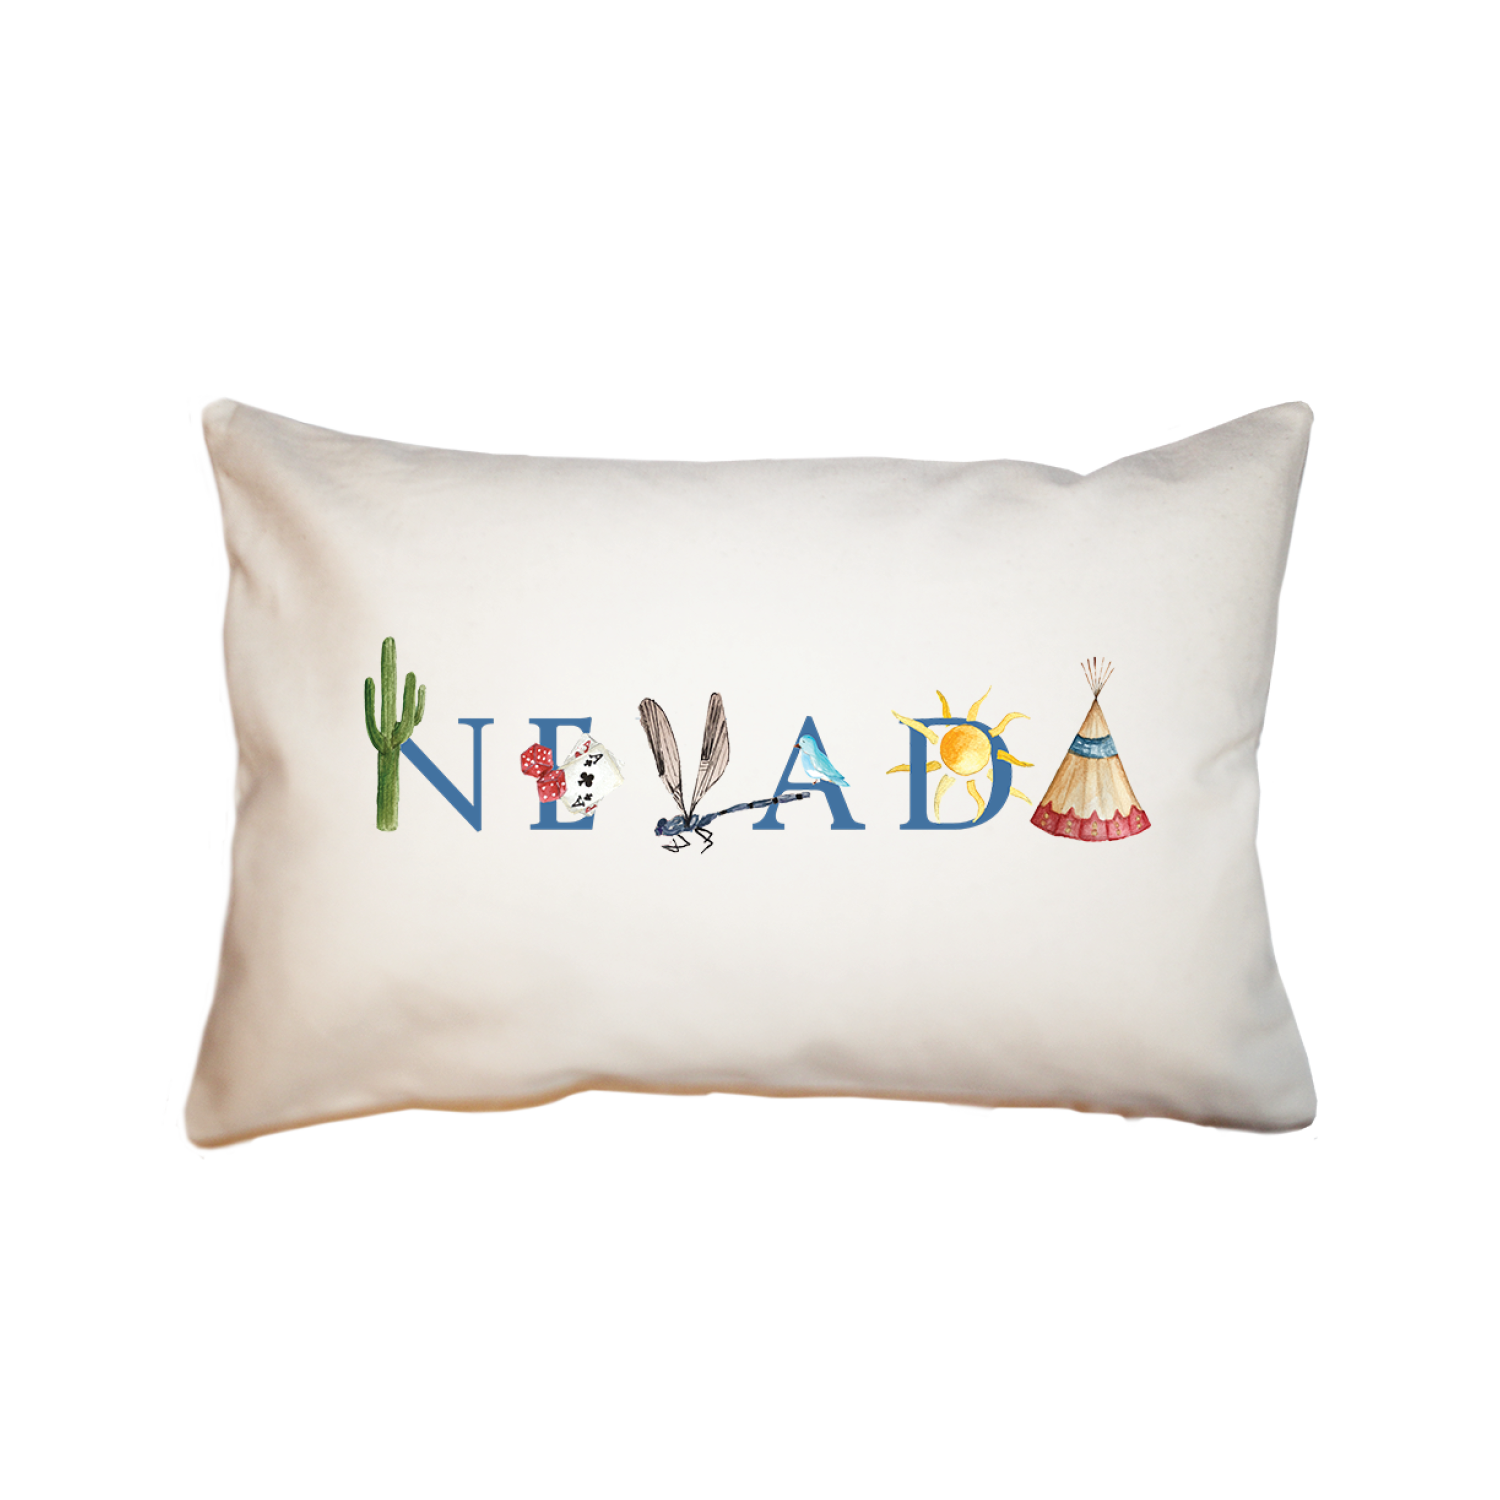 Nevada large rectangle pillow